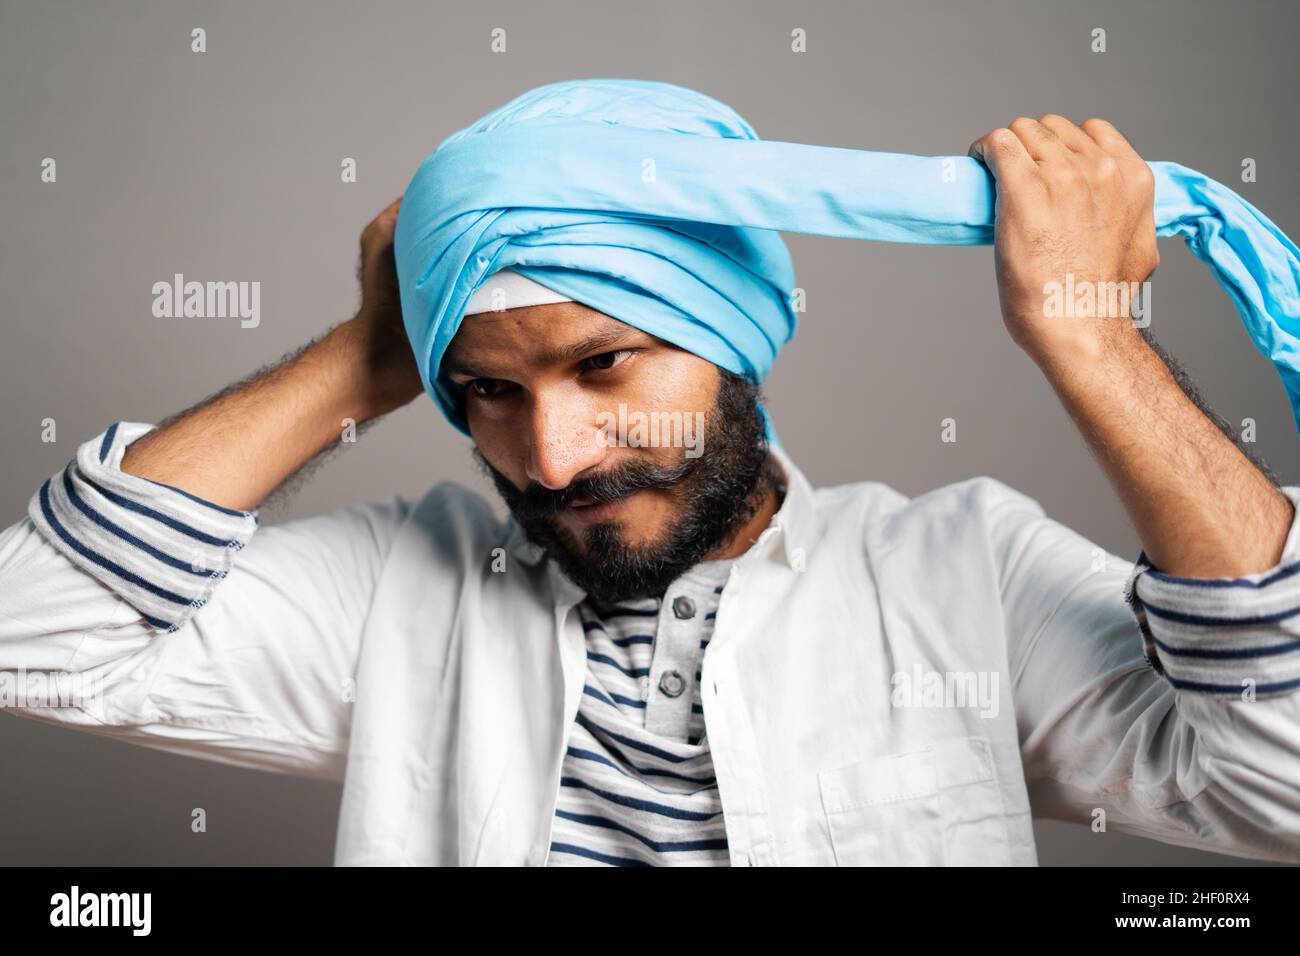 Hombre que llevaba dastar Sikh (turbante), Delhi, India Fotografía de stock  - Alamy